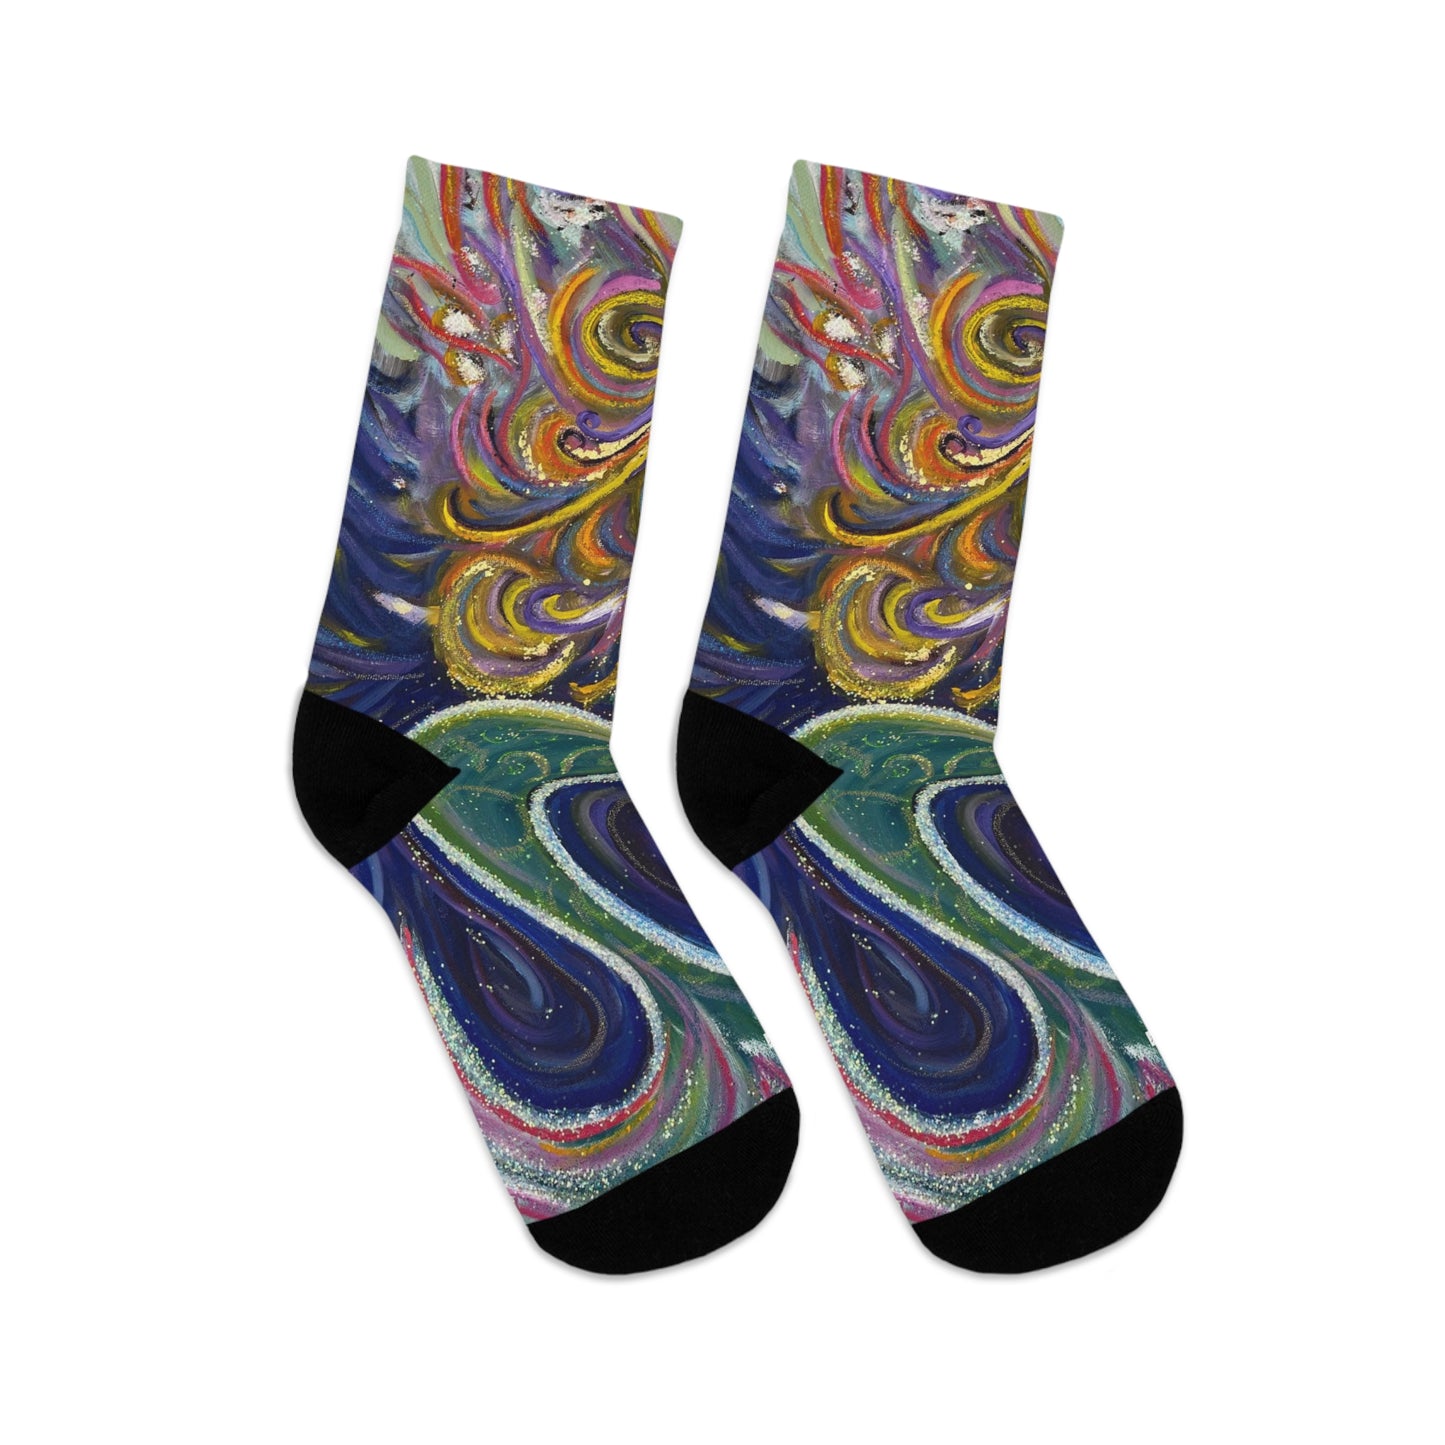 Mermaid Socks